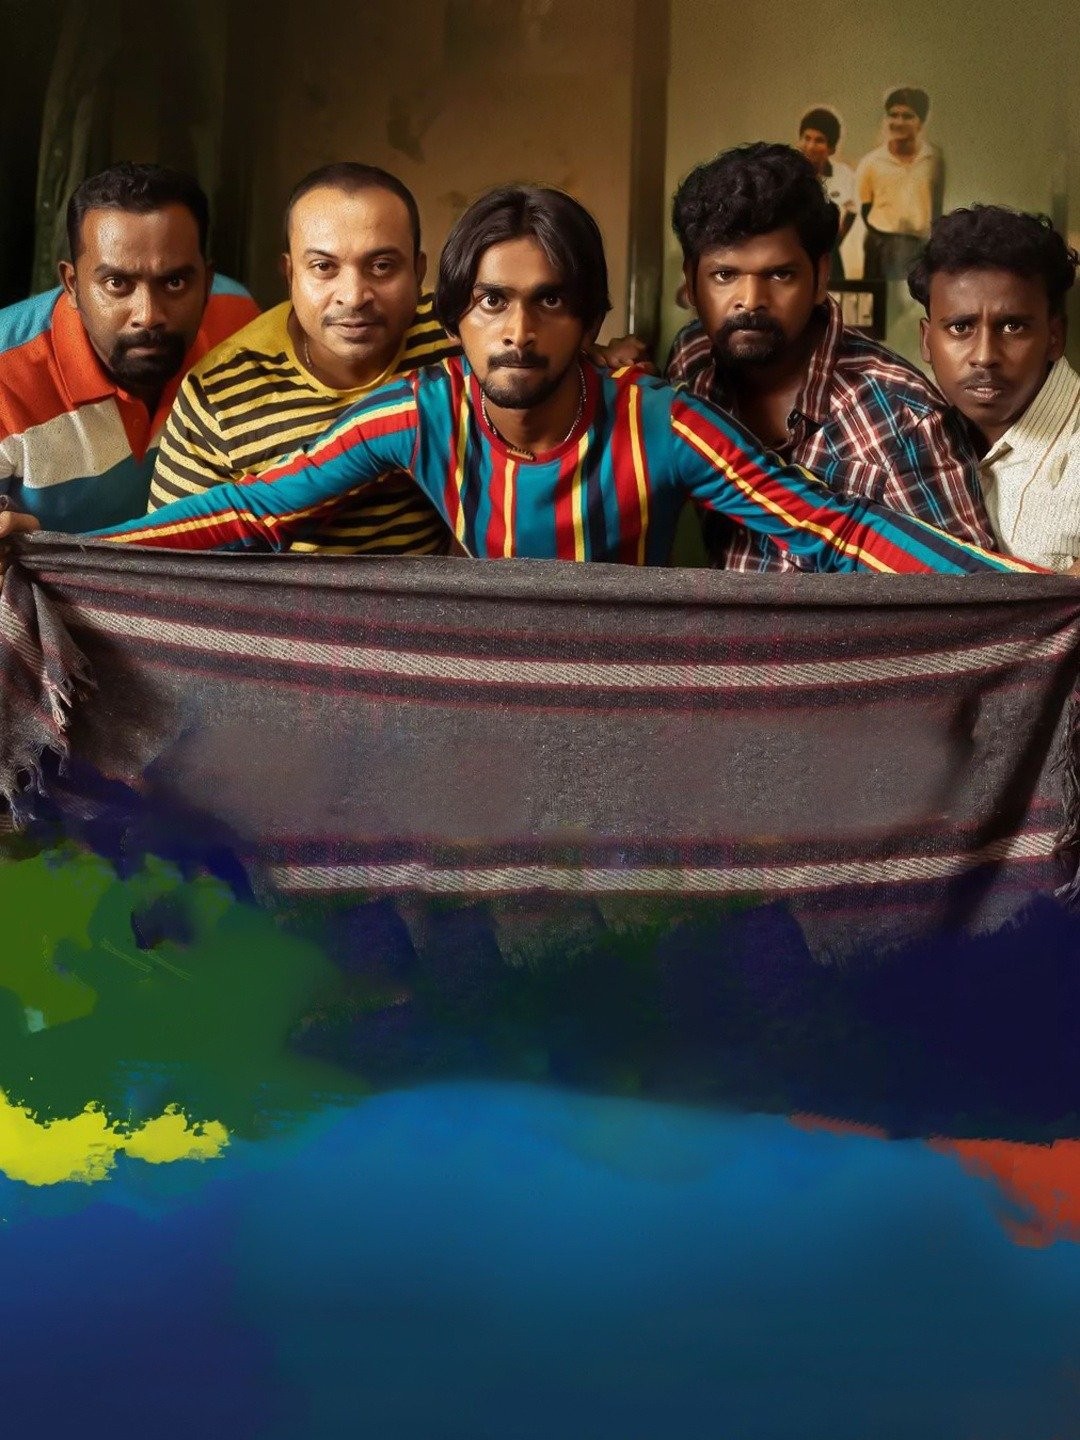 Romancham Malayalam Movie on Vimeo